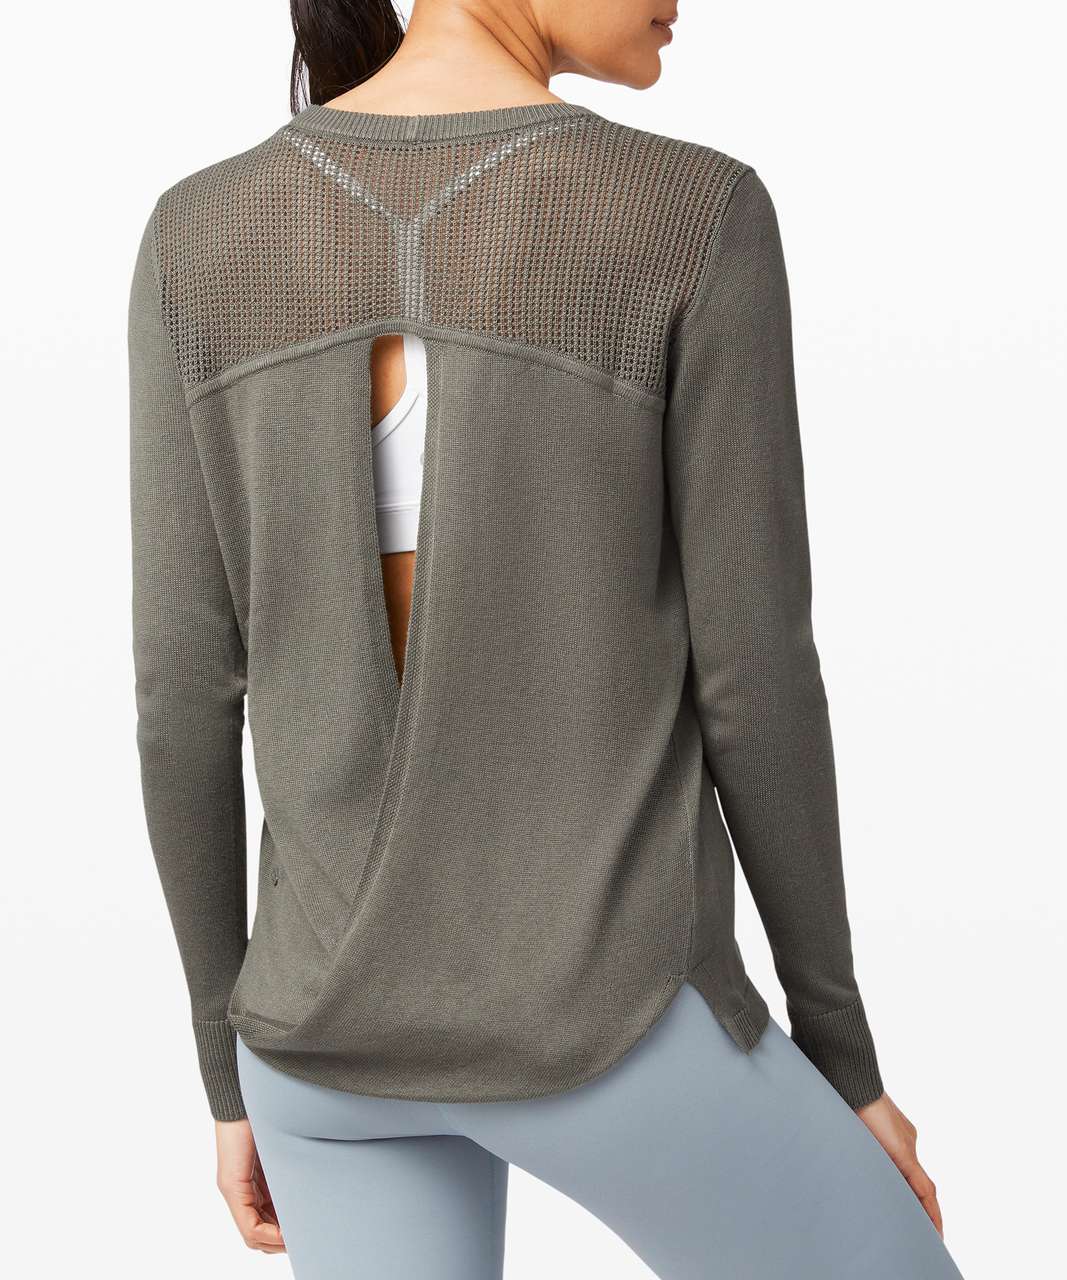 Lululemon Back to Balance Long Sleeve Sweater - Grey Sage